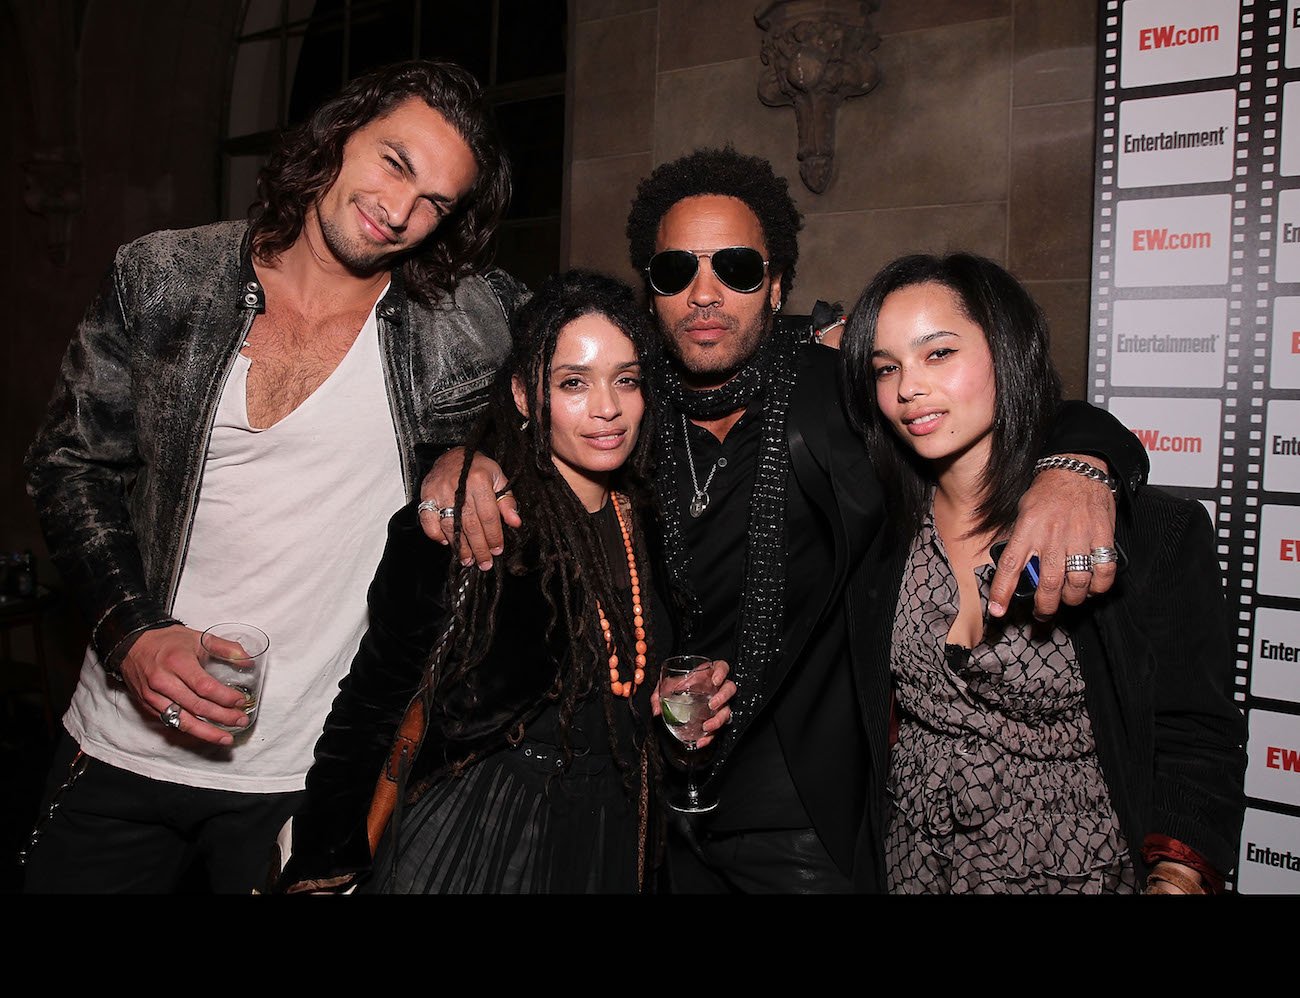 Jason Momoa, Lisa Bonet, Lenny Kravitz, and Zoe Kravtiz at an Entertainment Weekly party.